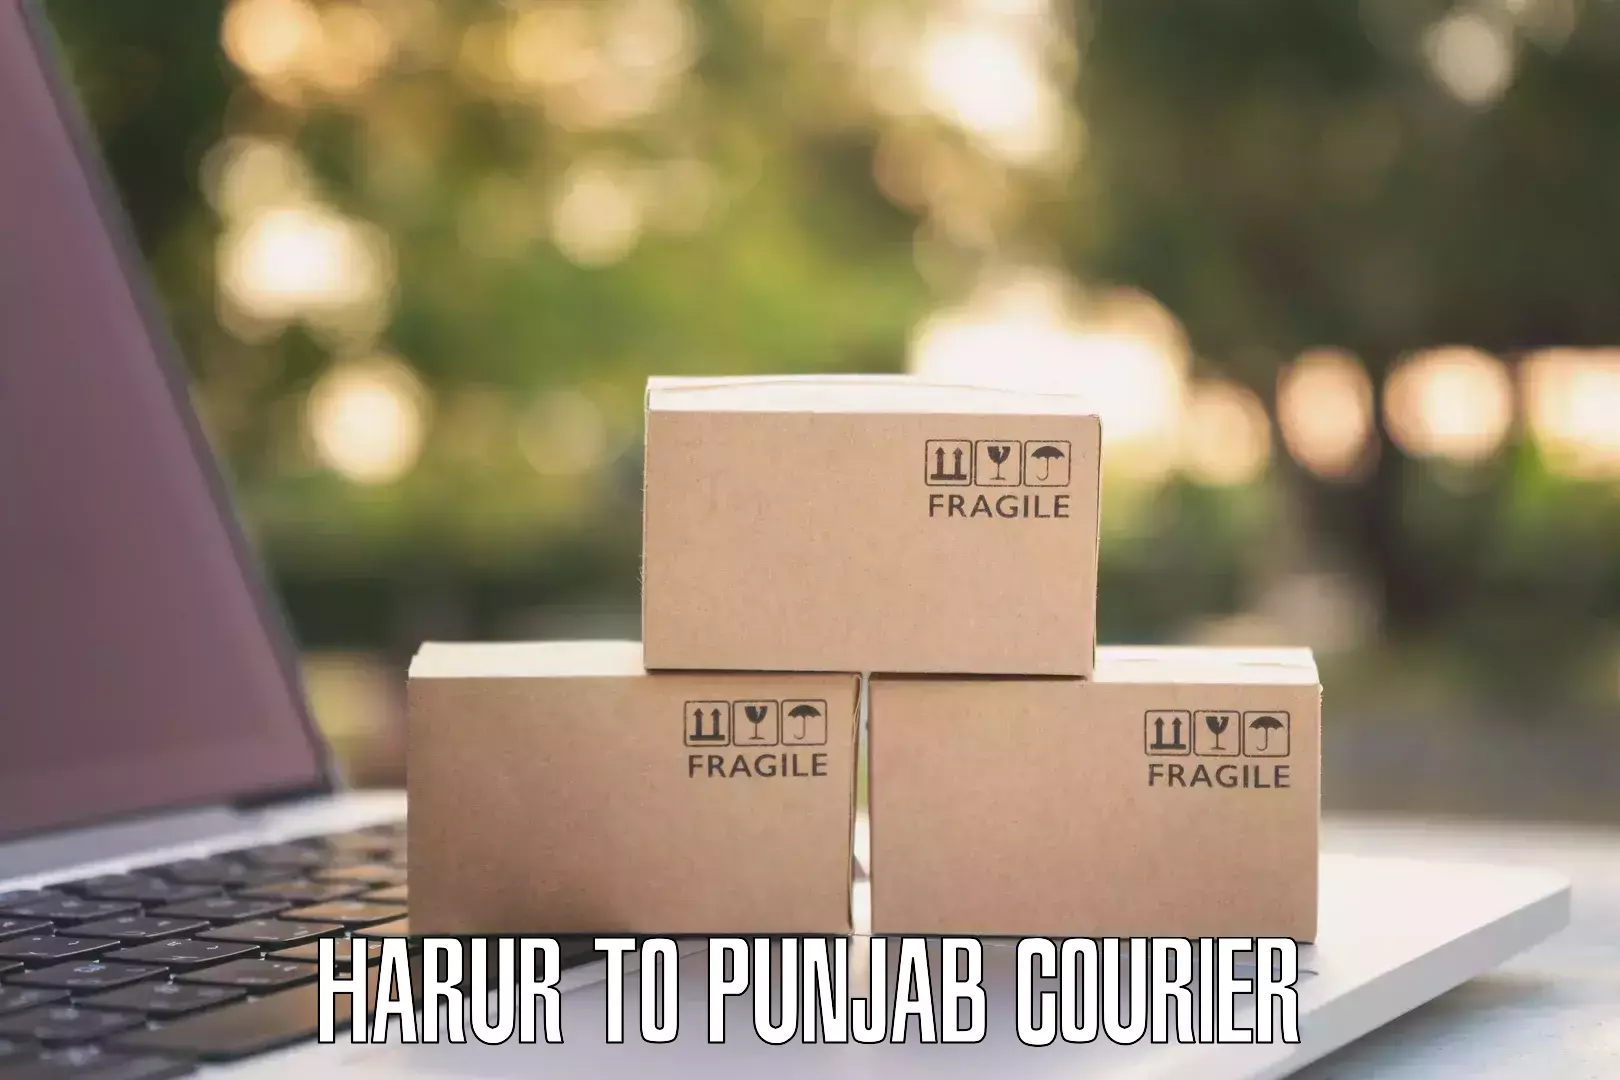 Express package transport Harur to Punjab